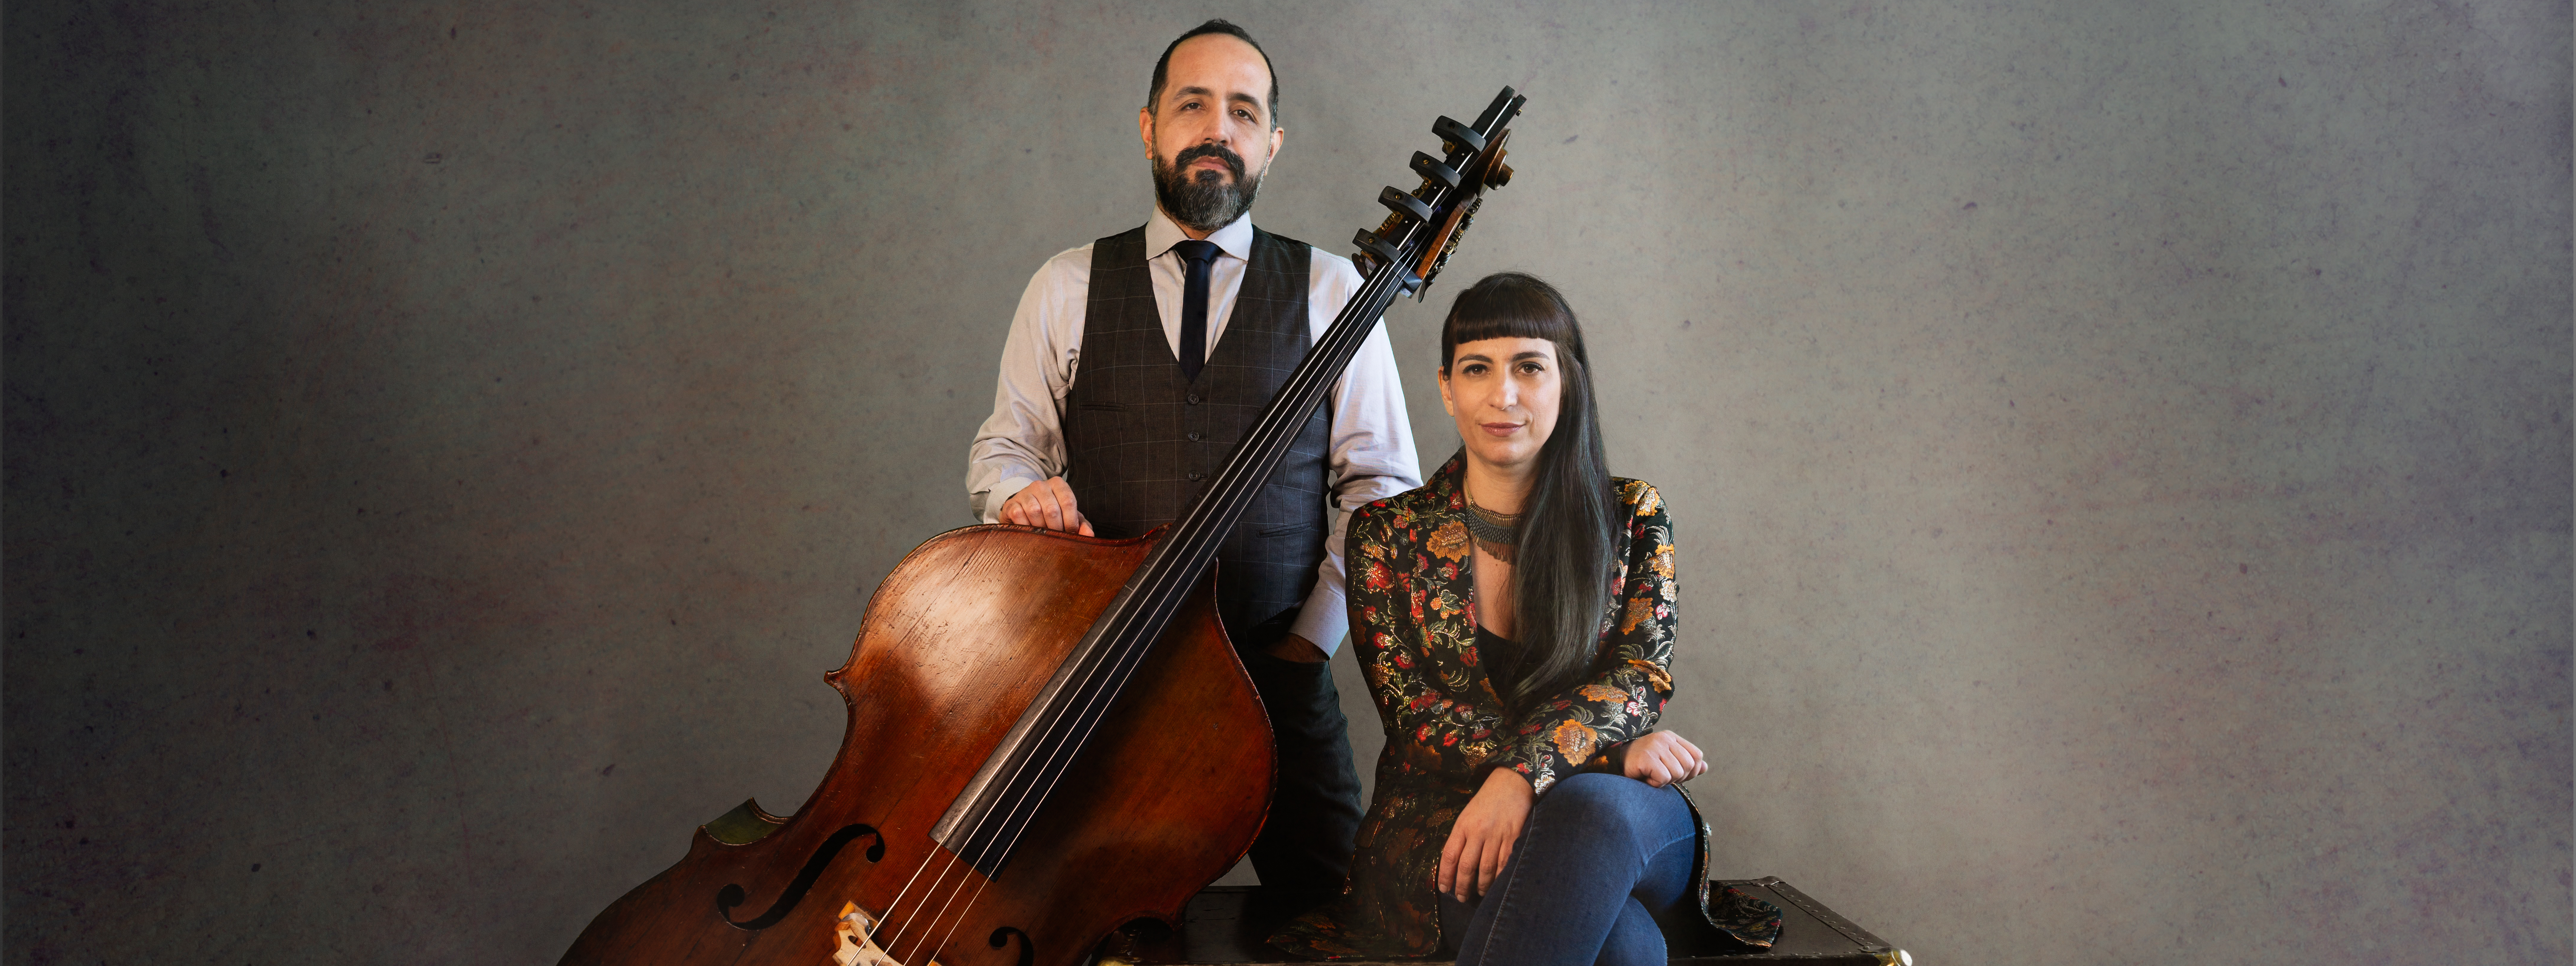 Sofia Rei & Jorge Roeder: Coplas Escondidas Album Release